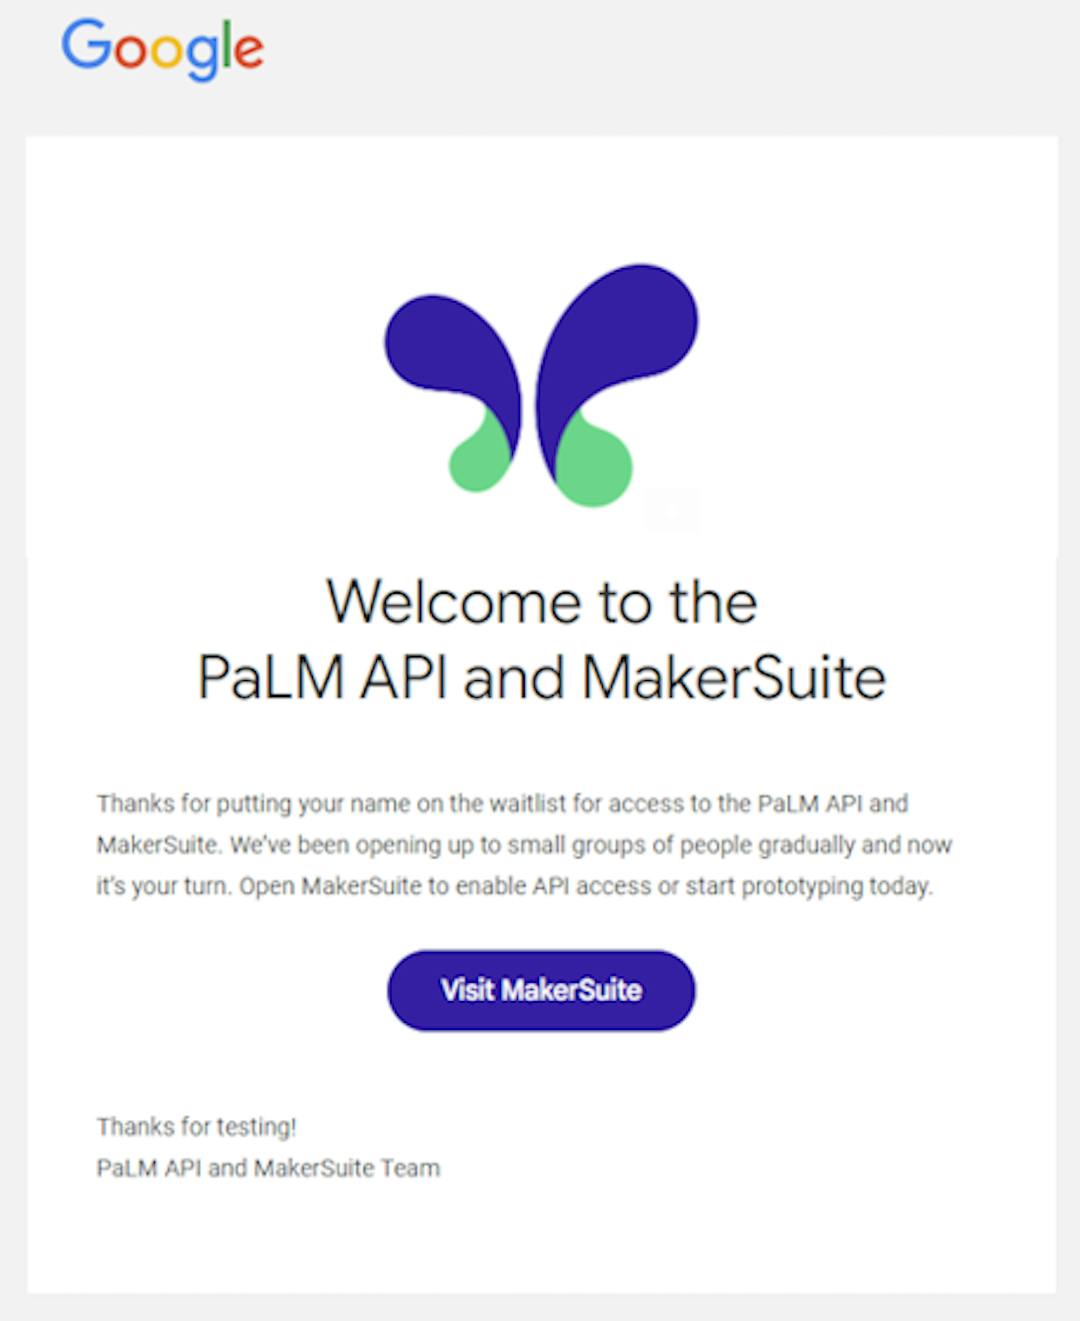 来自 Google 的关于访问 PaLM API 和 MakerSuite 的欢迎电子邮件